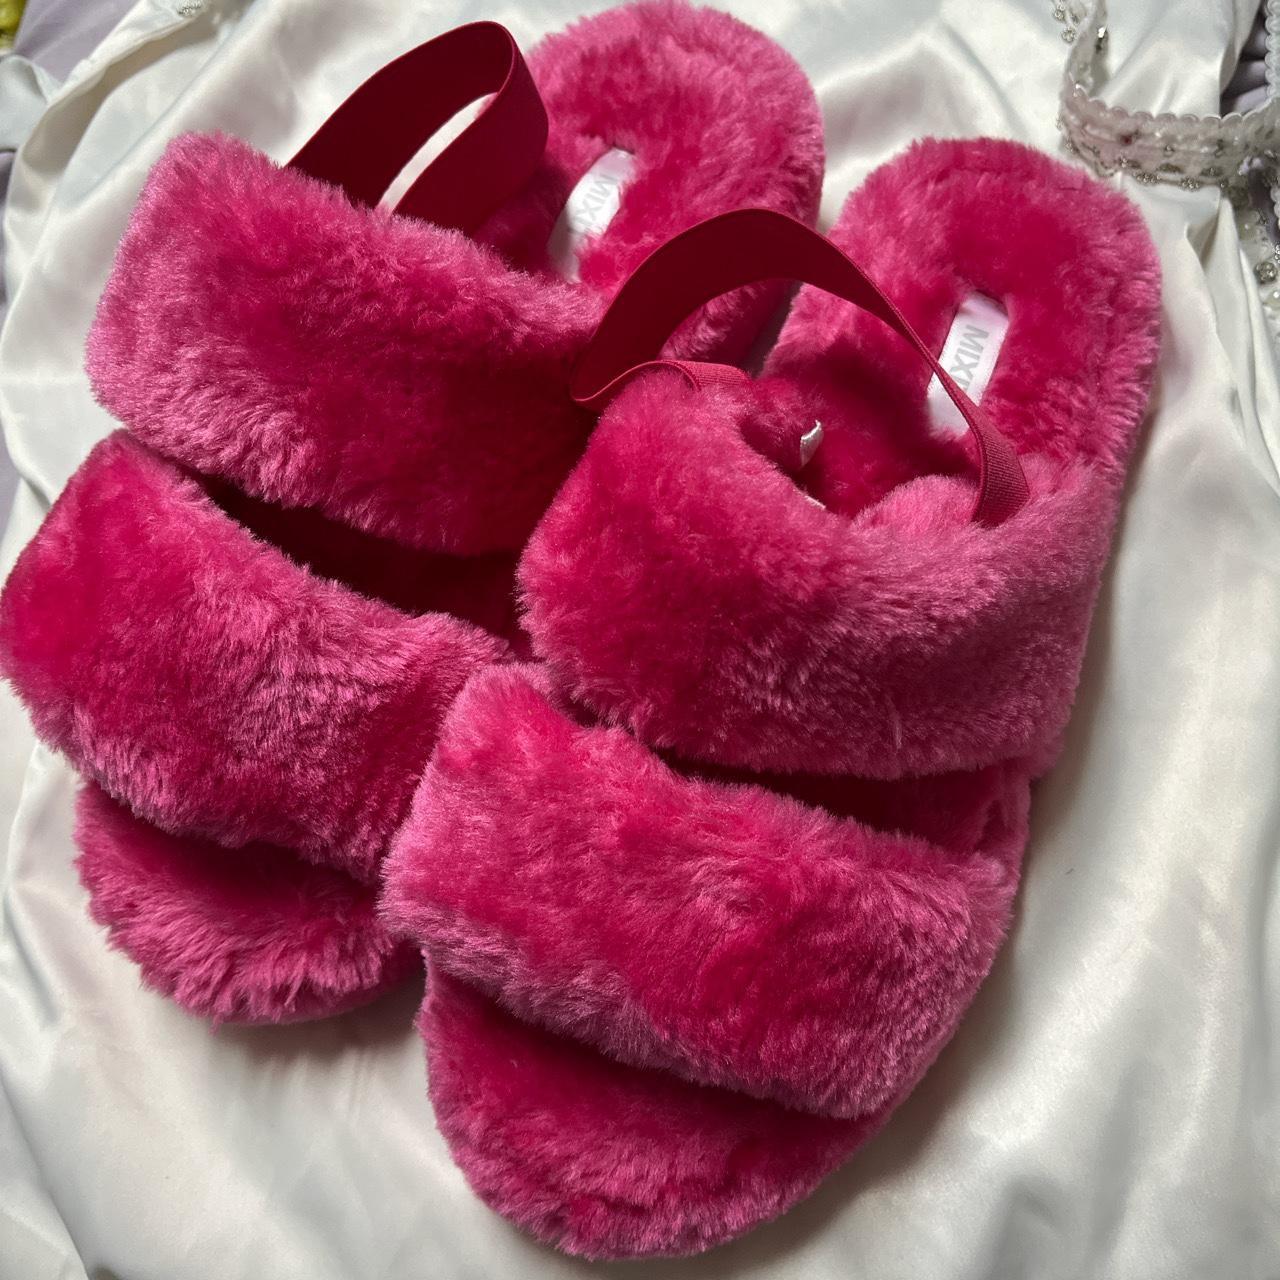 Pink fuzzy slides - Depop